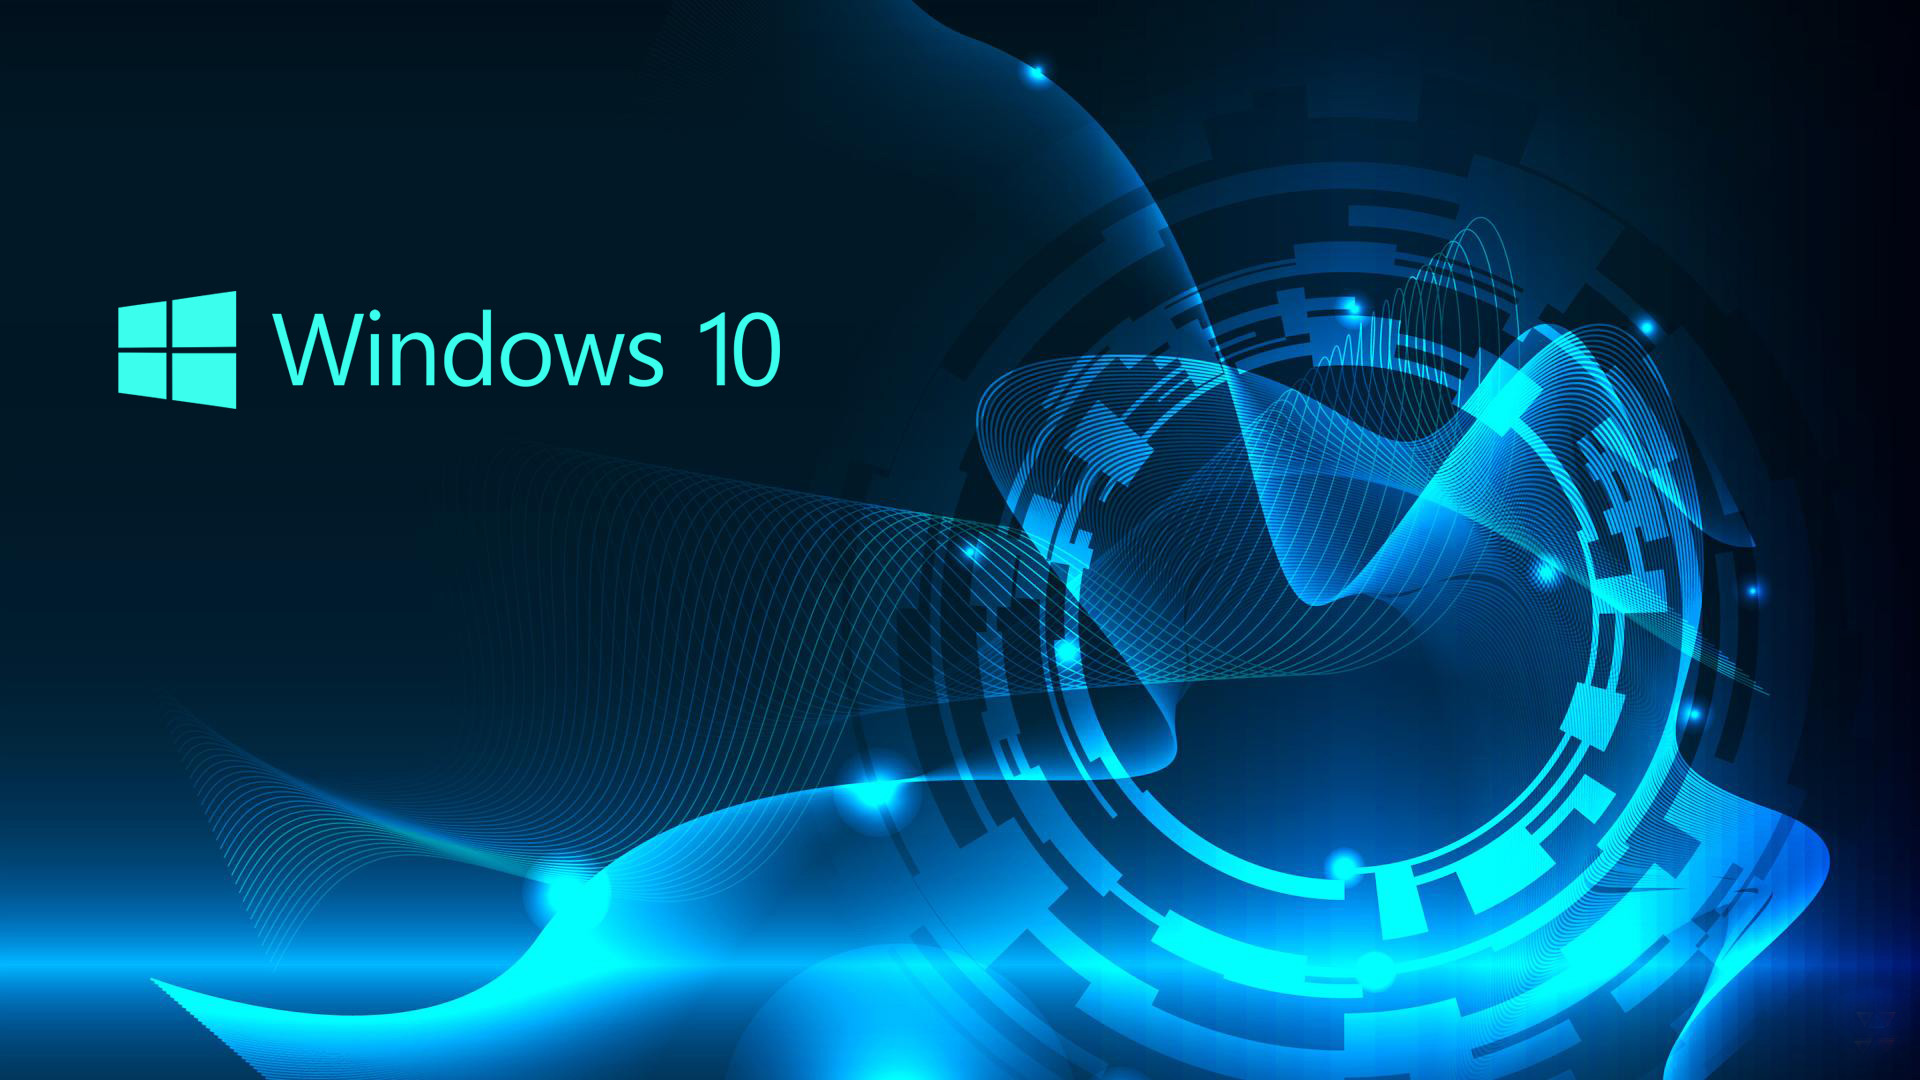 Tổng hợp 50 hình nền win 10 đẹp nhất  Hình nền máy tính  Windows 10  Best windows Live wallpapers